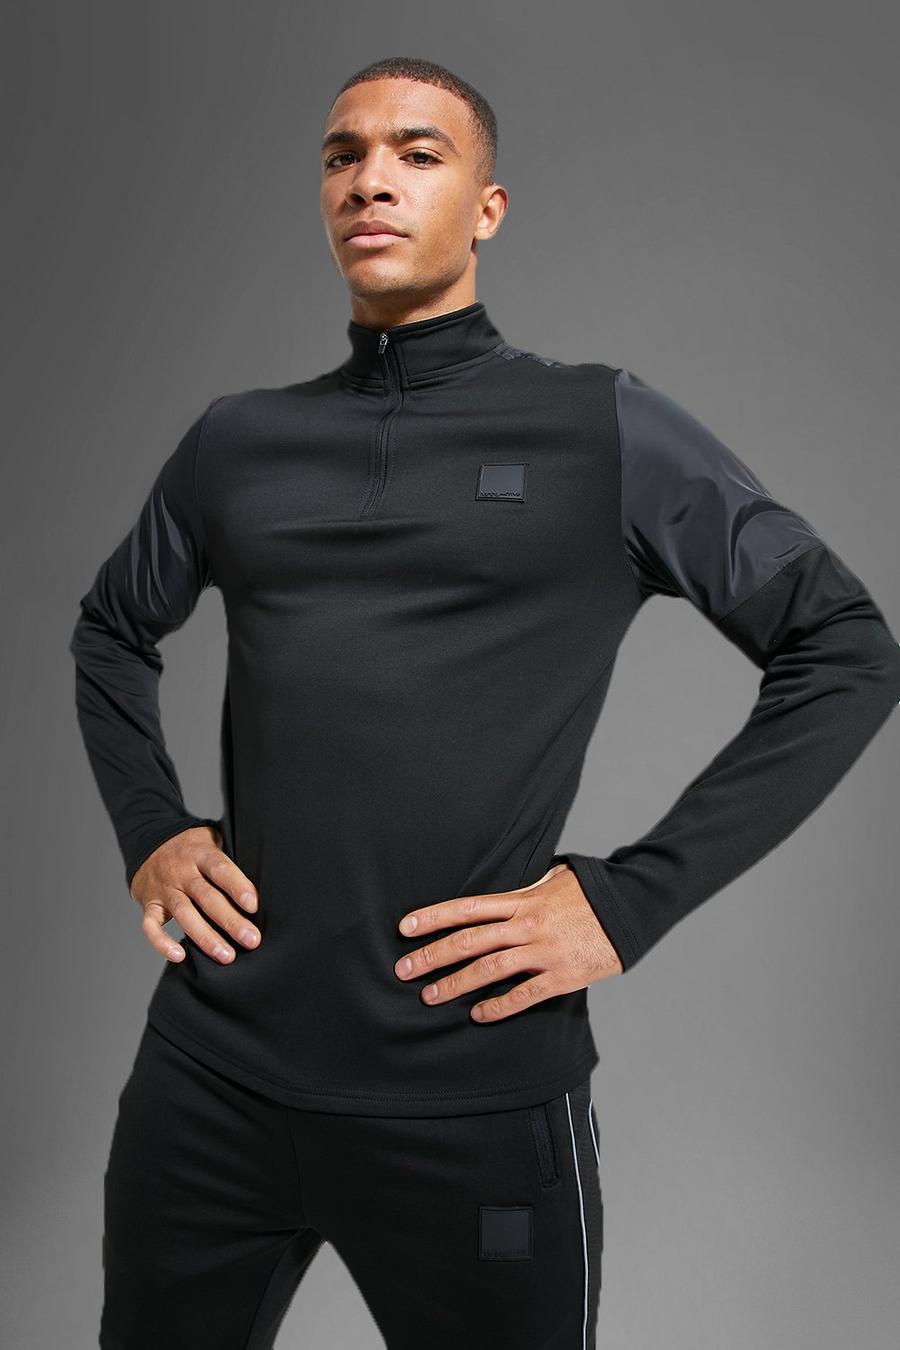 Man Active Gym Performance Trainingsanzug mit Reißverschluss, Black schwarz